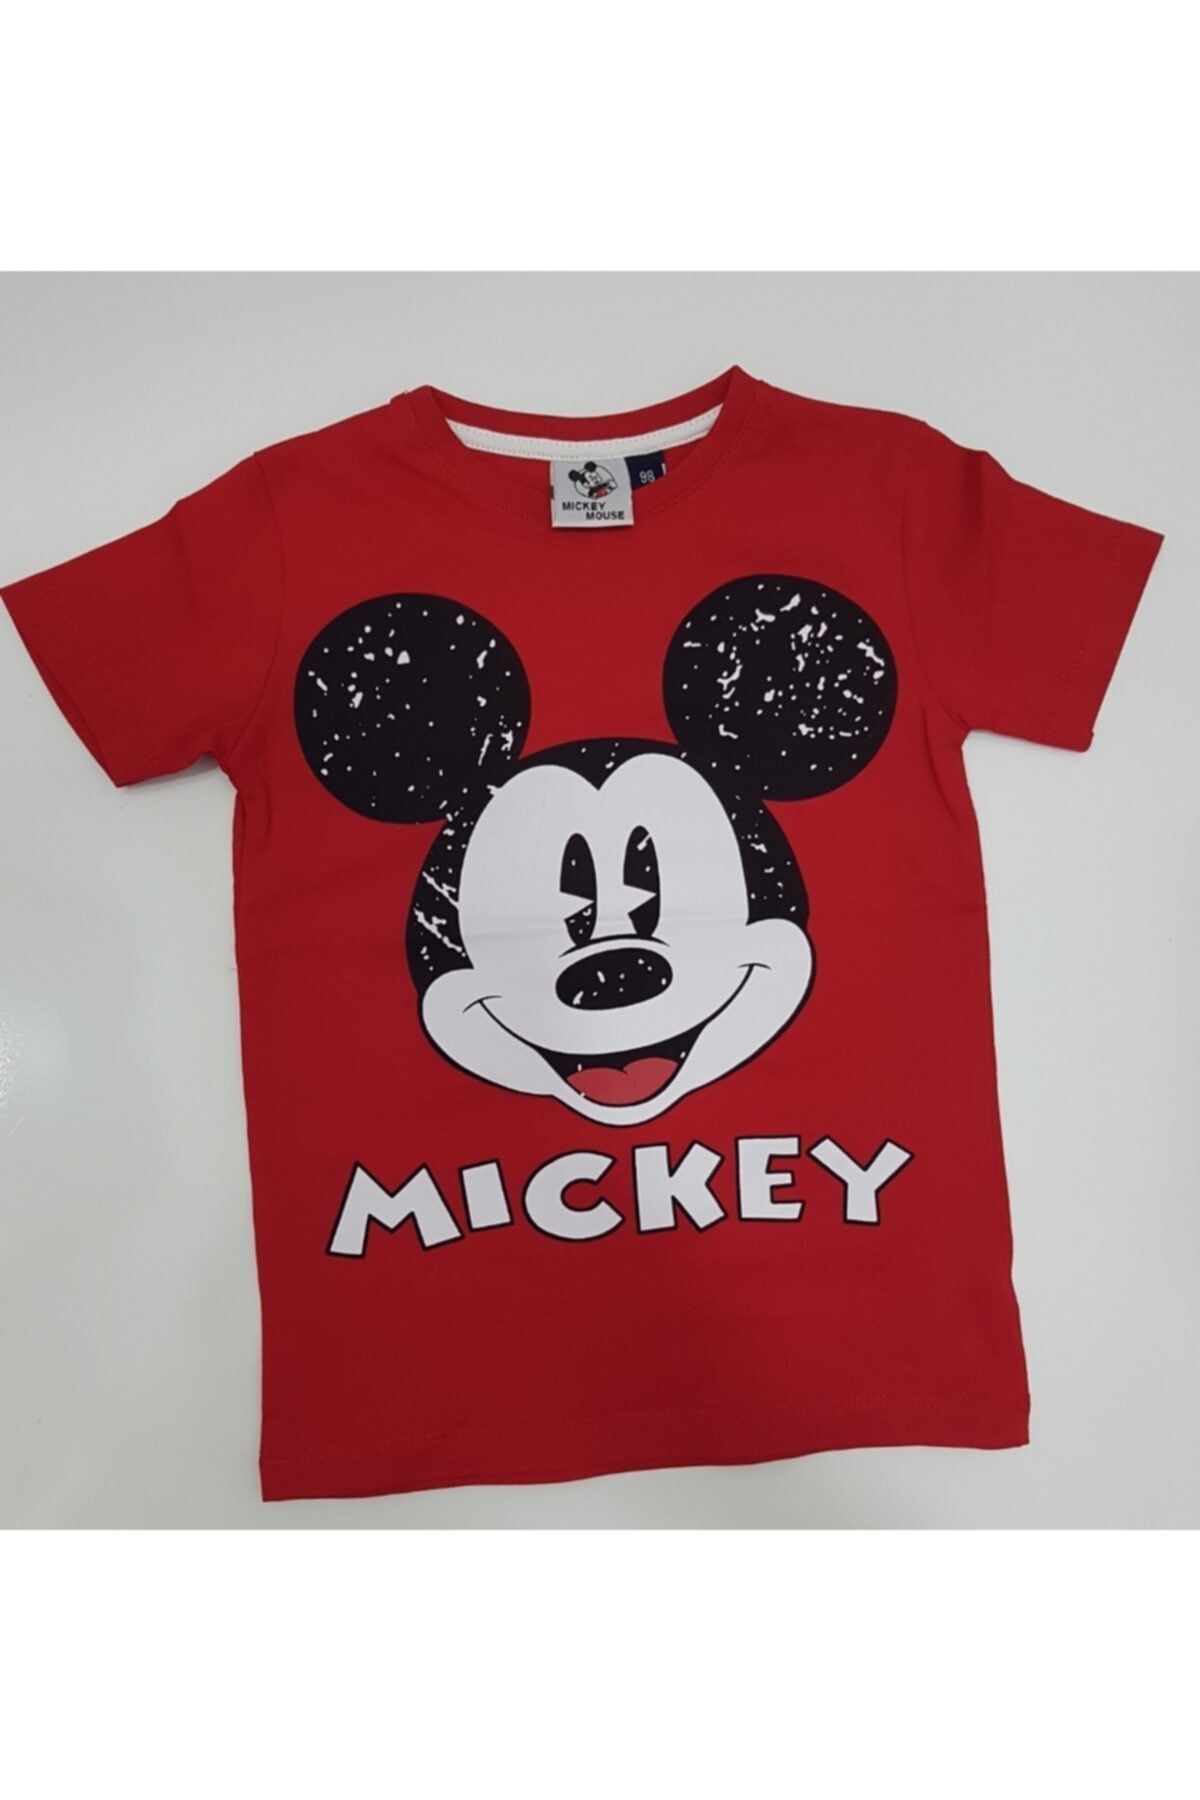 Mickey Mouse Kırmızı Renk %100 Pamuk Desenli Tişört